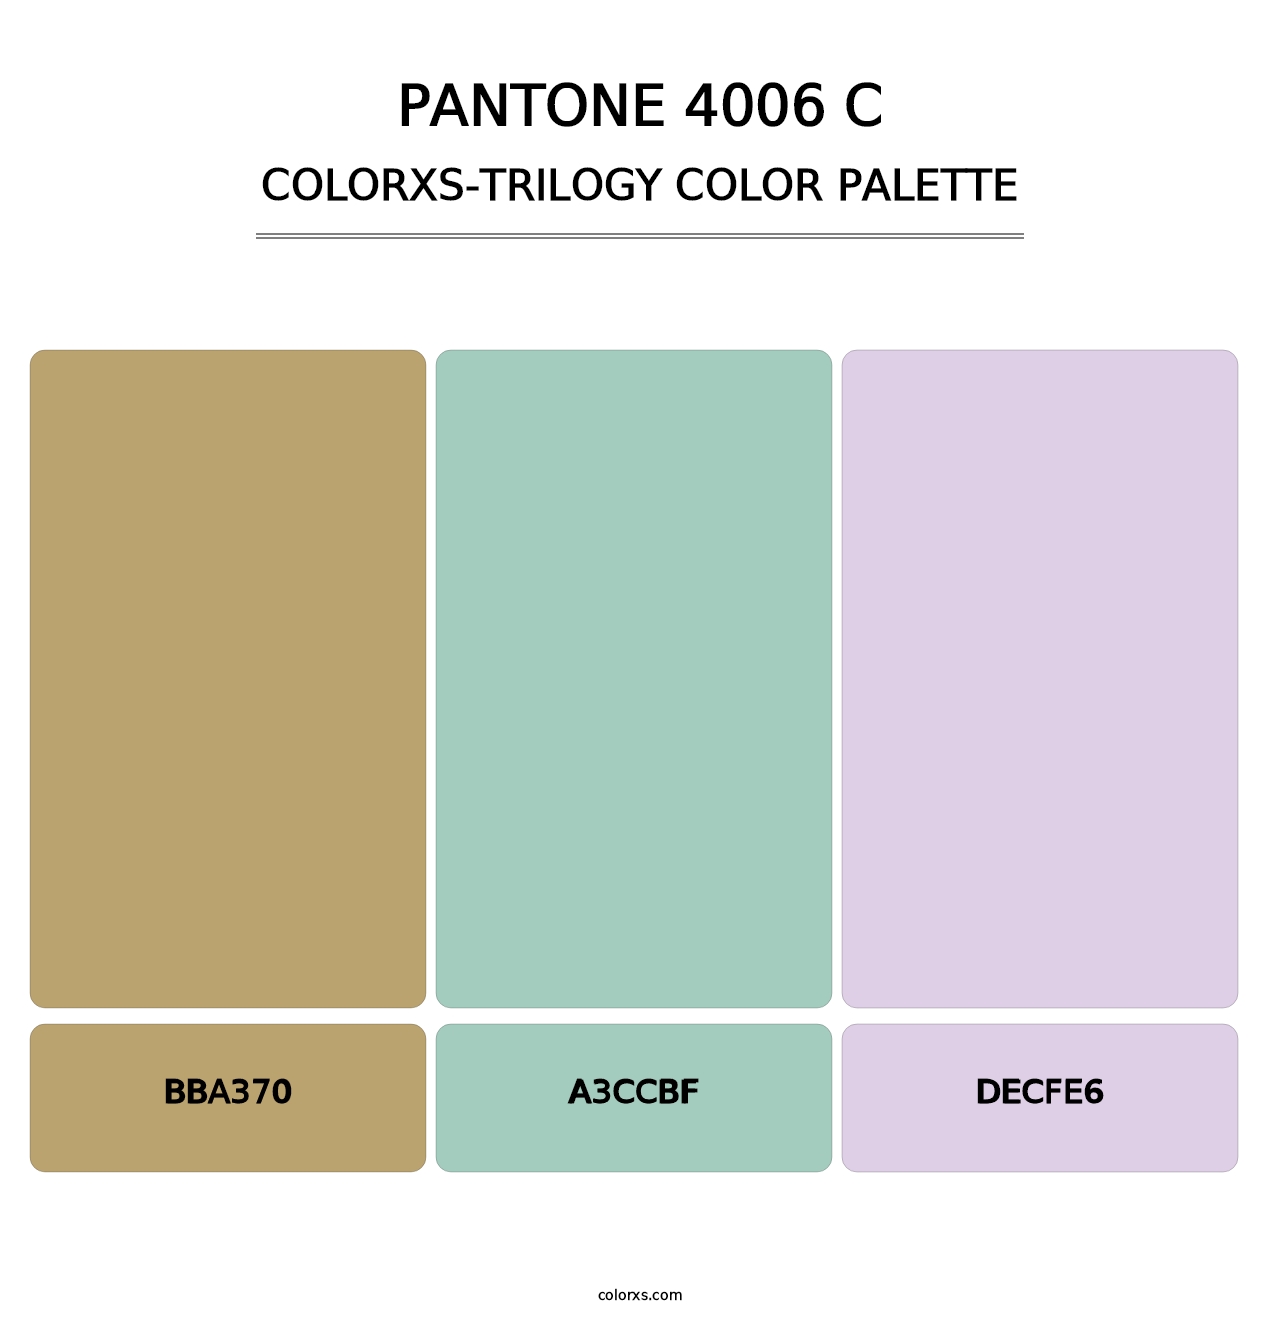 PANTONE 4006 C - Colorxs Trilogy Palette